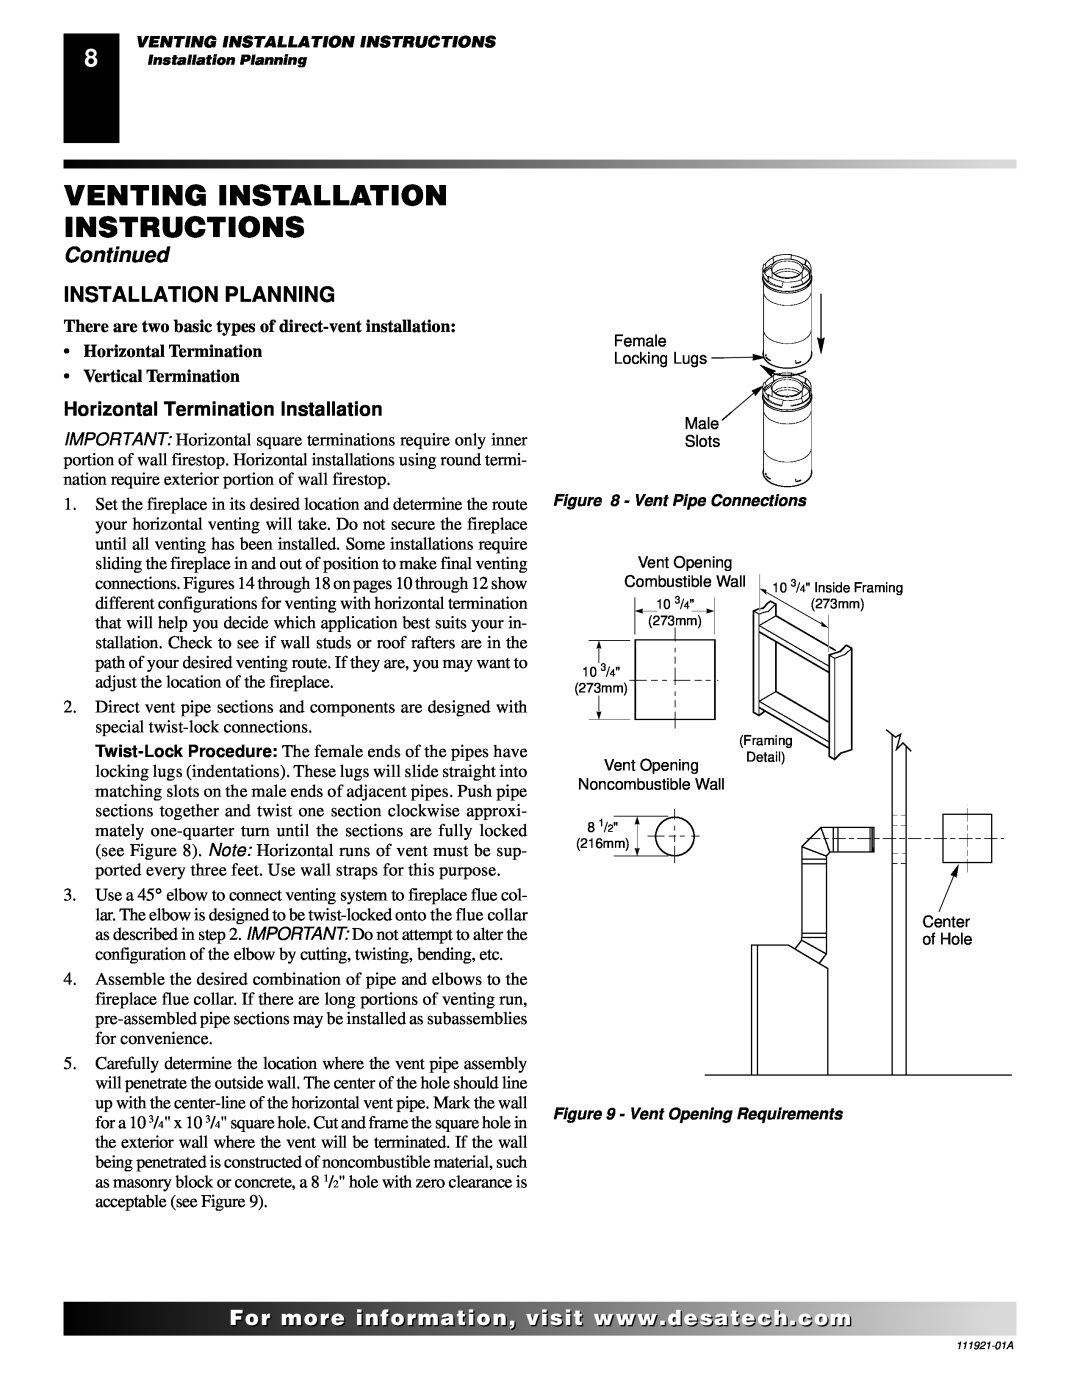 Desa (V)K42N Installation Planning, Venting Installation Instructions, Continued, Horizontal Termination Installation 